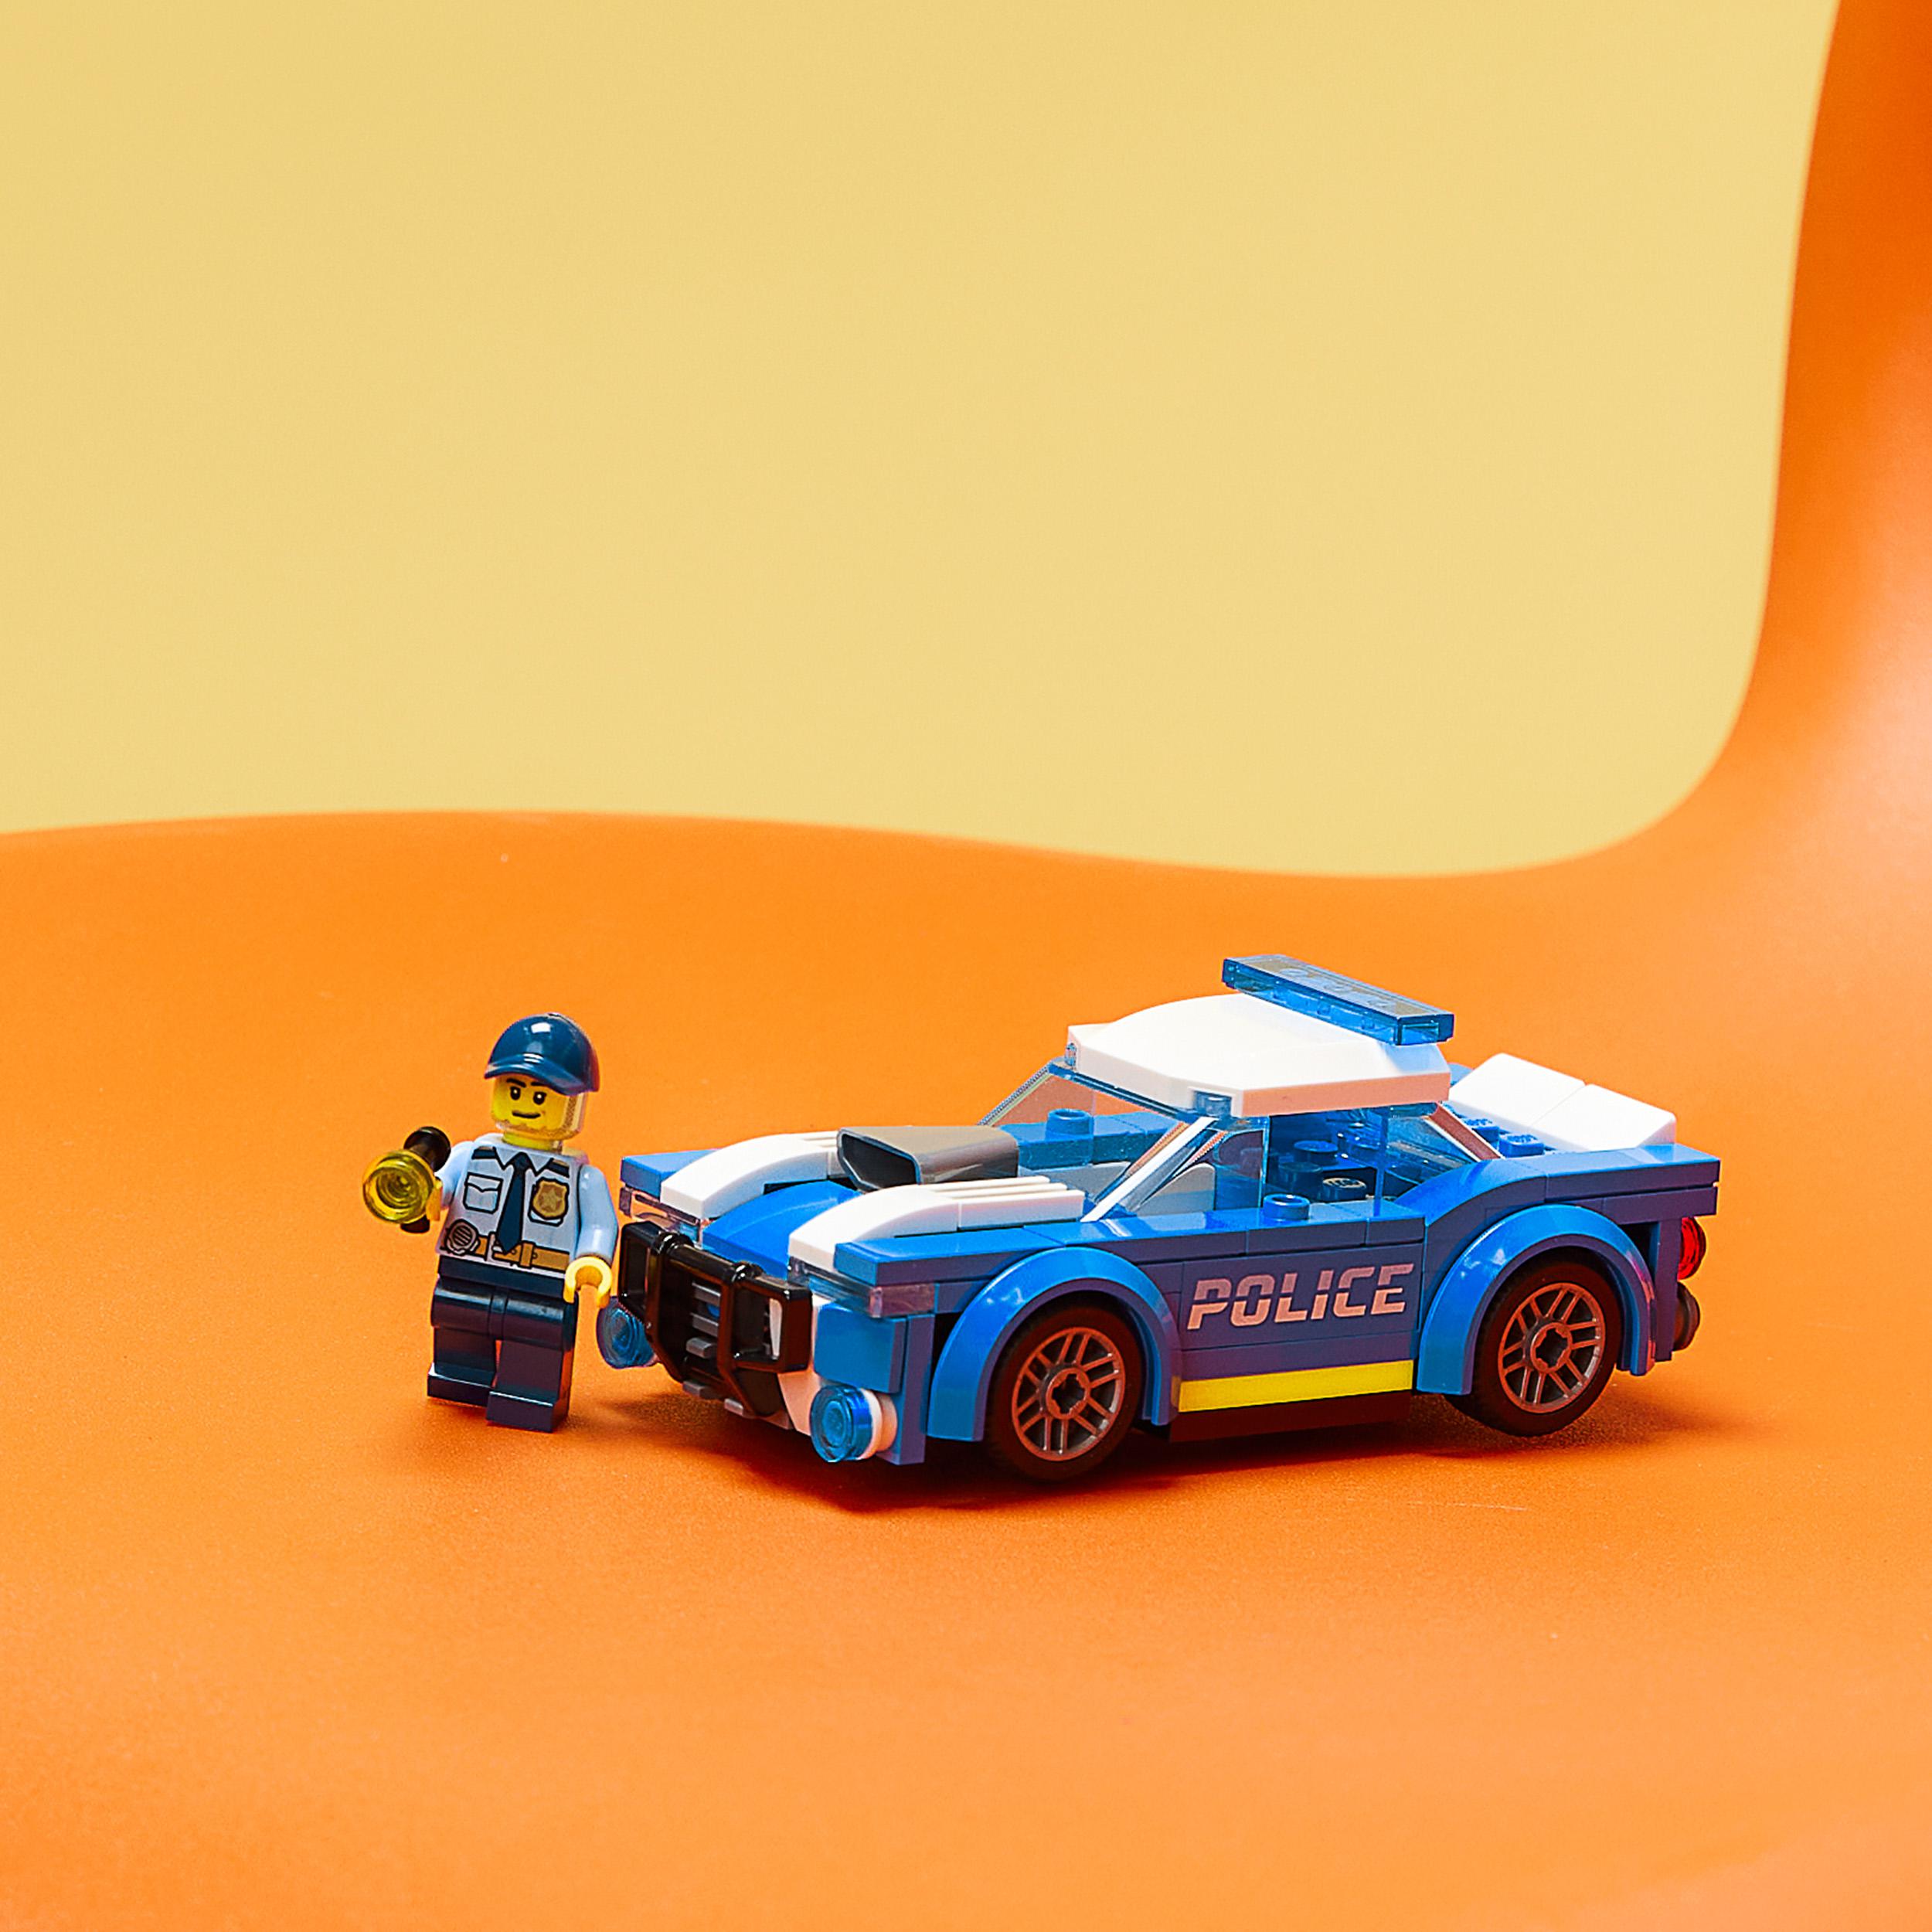 Lego city police auto della polizia, set di costruzione con minifigure e macchina giocattolo per bambini di 5+ anni, 60312 - LEGO CITY, Lego